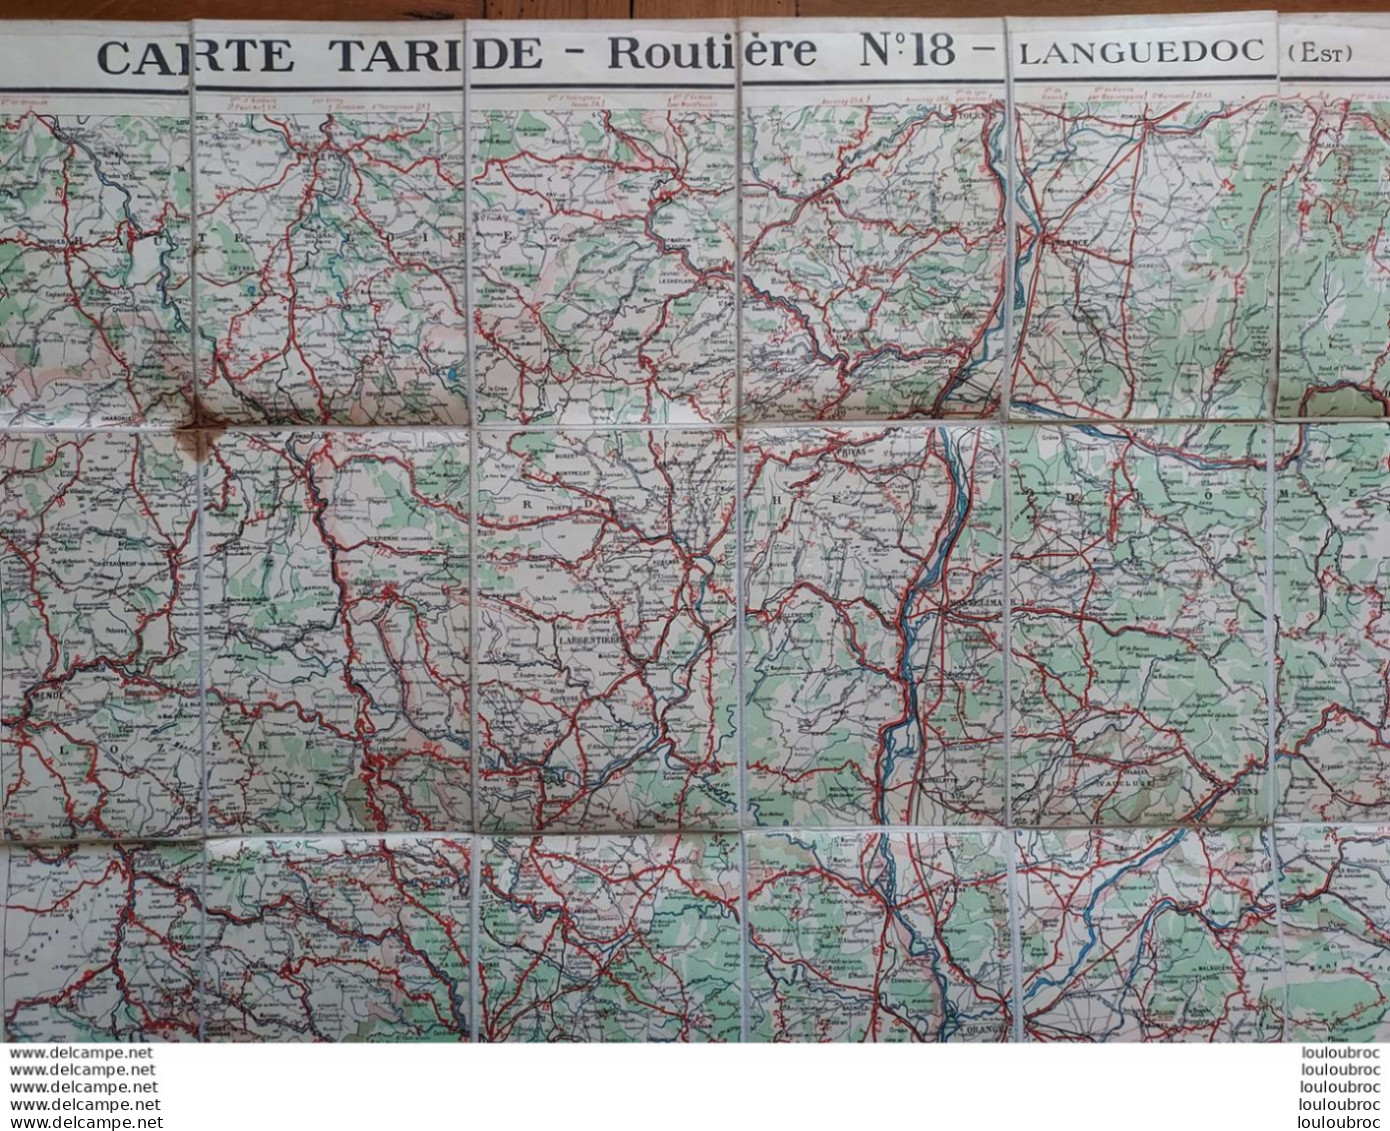 CARTE ROUTIERE TARIDE TOILEE N°18 LANGUEDOC EST - Wegenkaarten